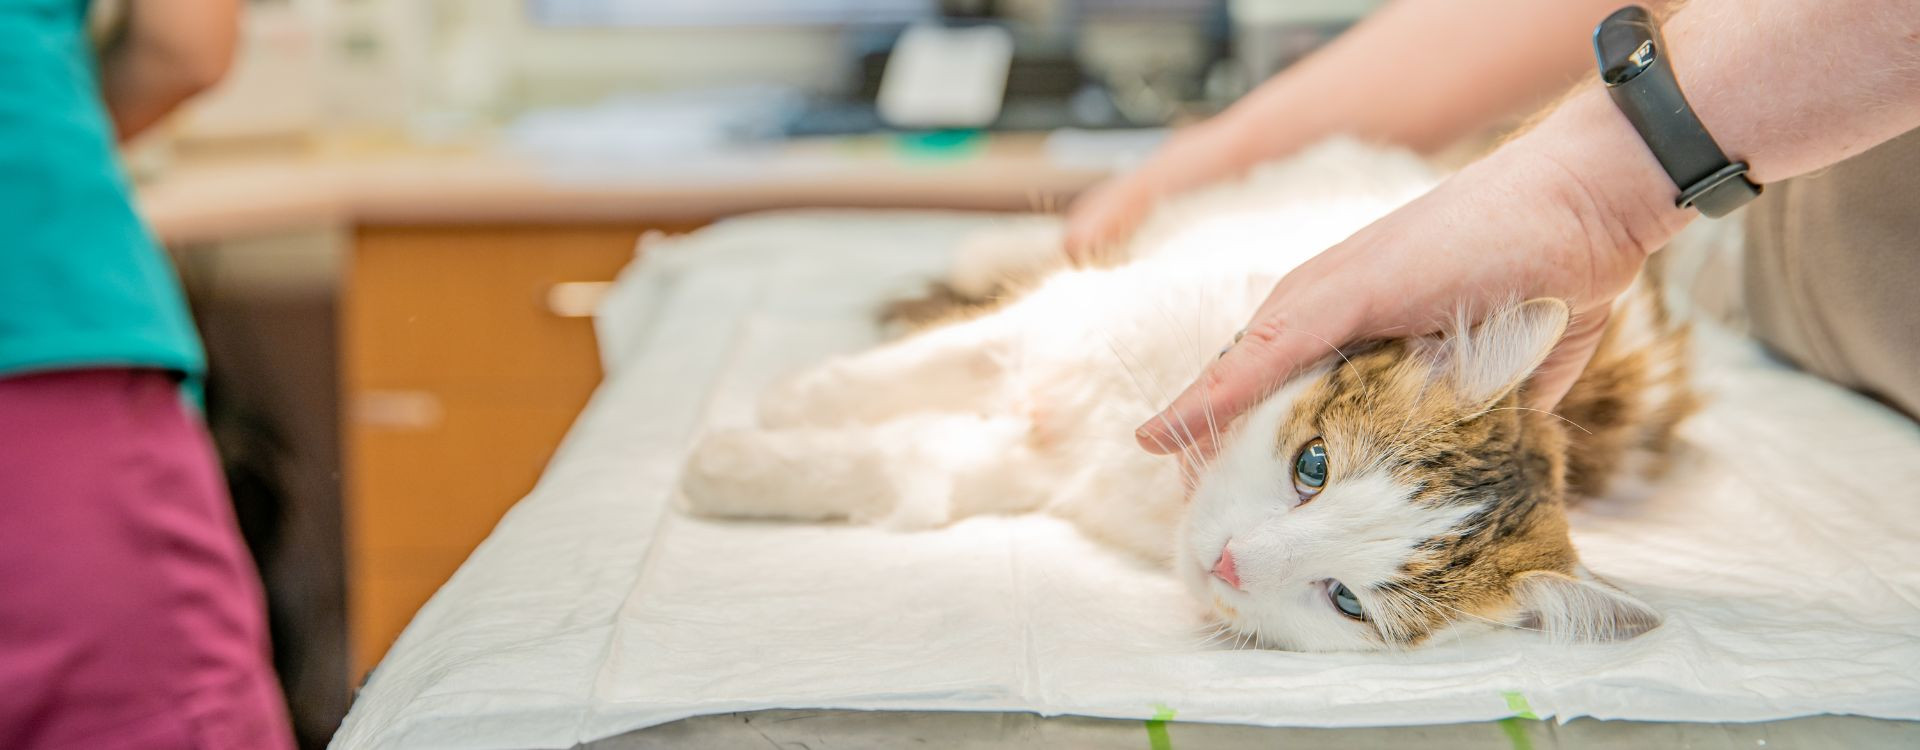 Tout savoir sur la stérilisation des chattes